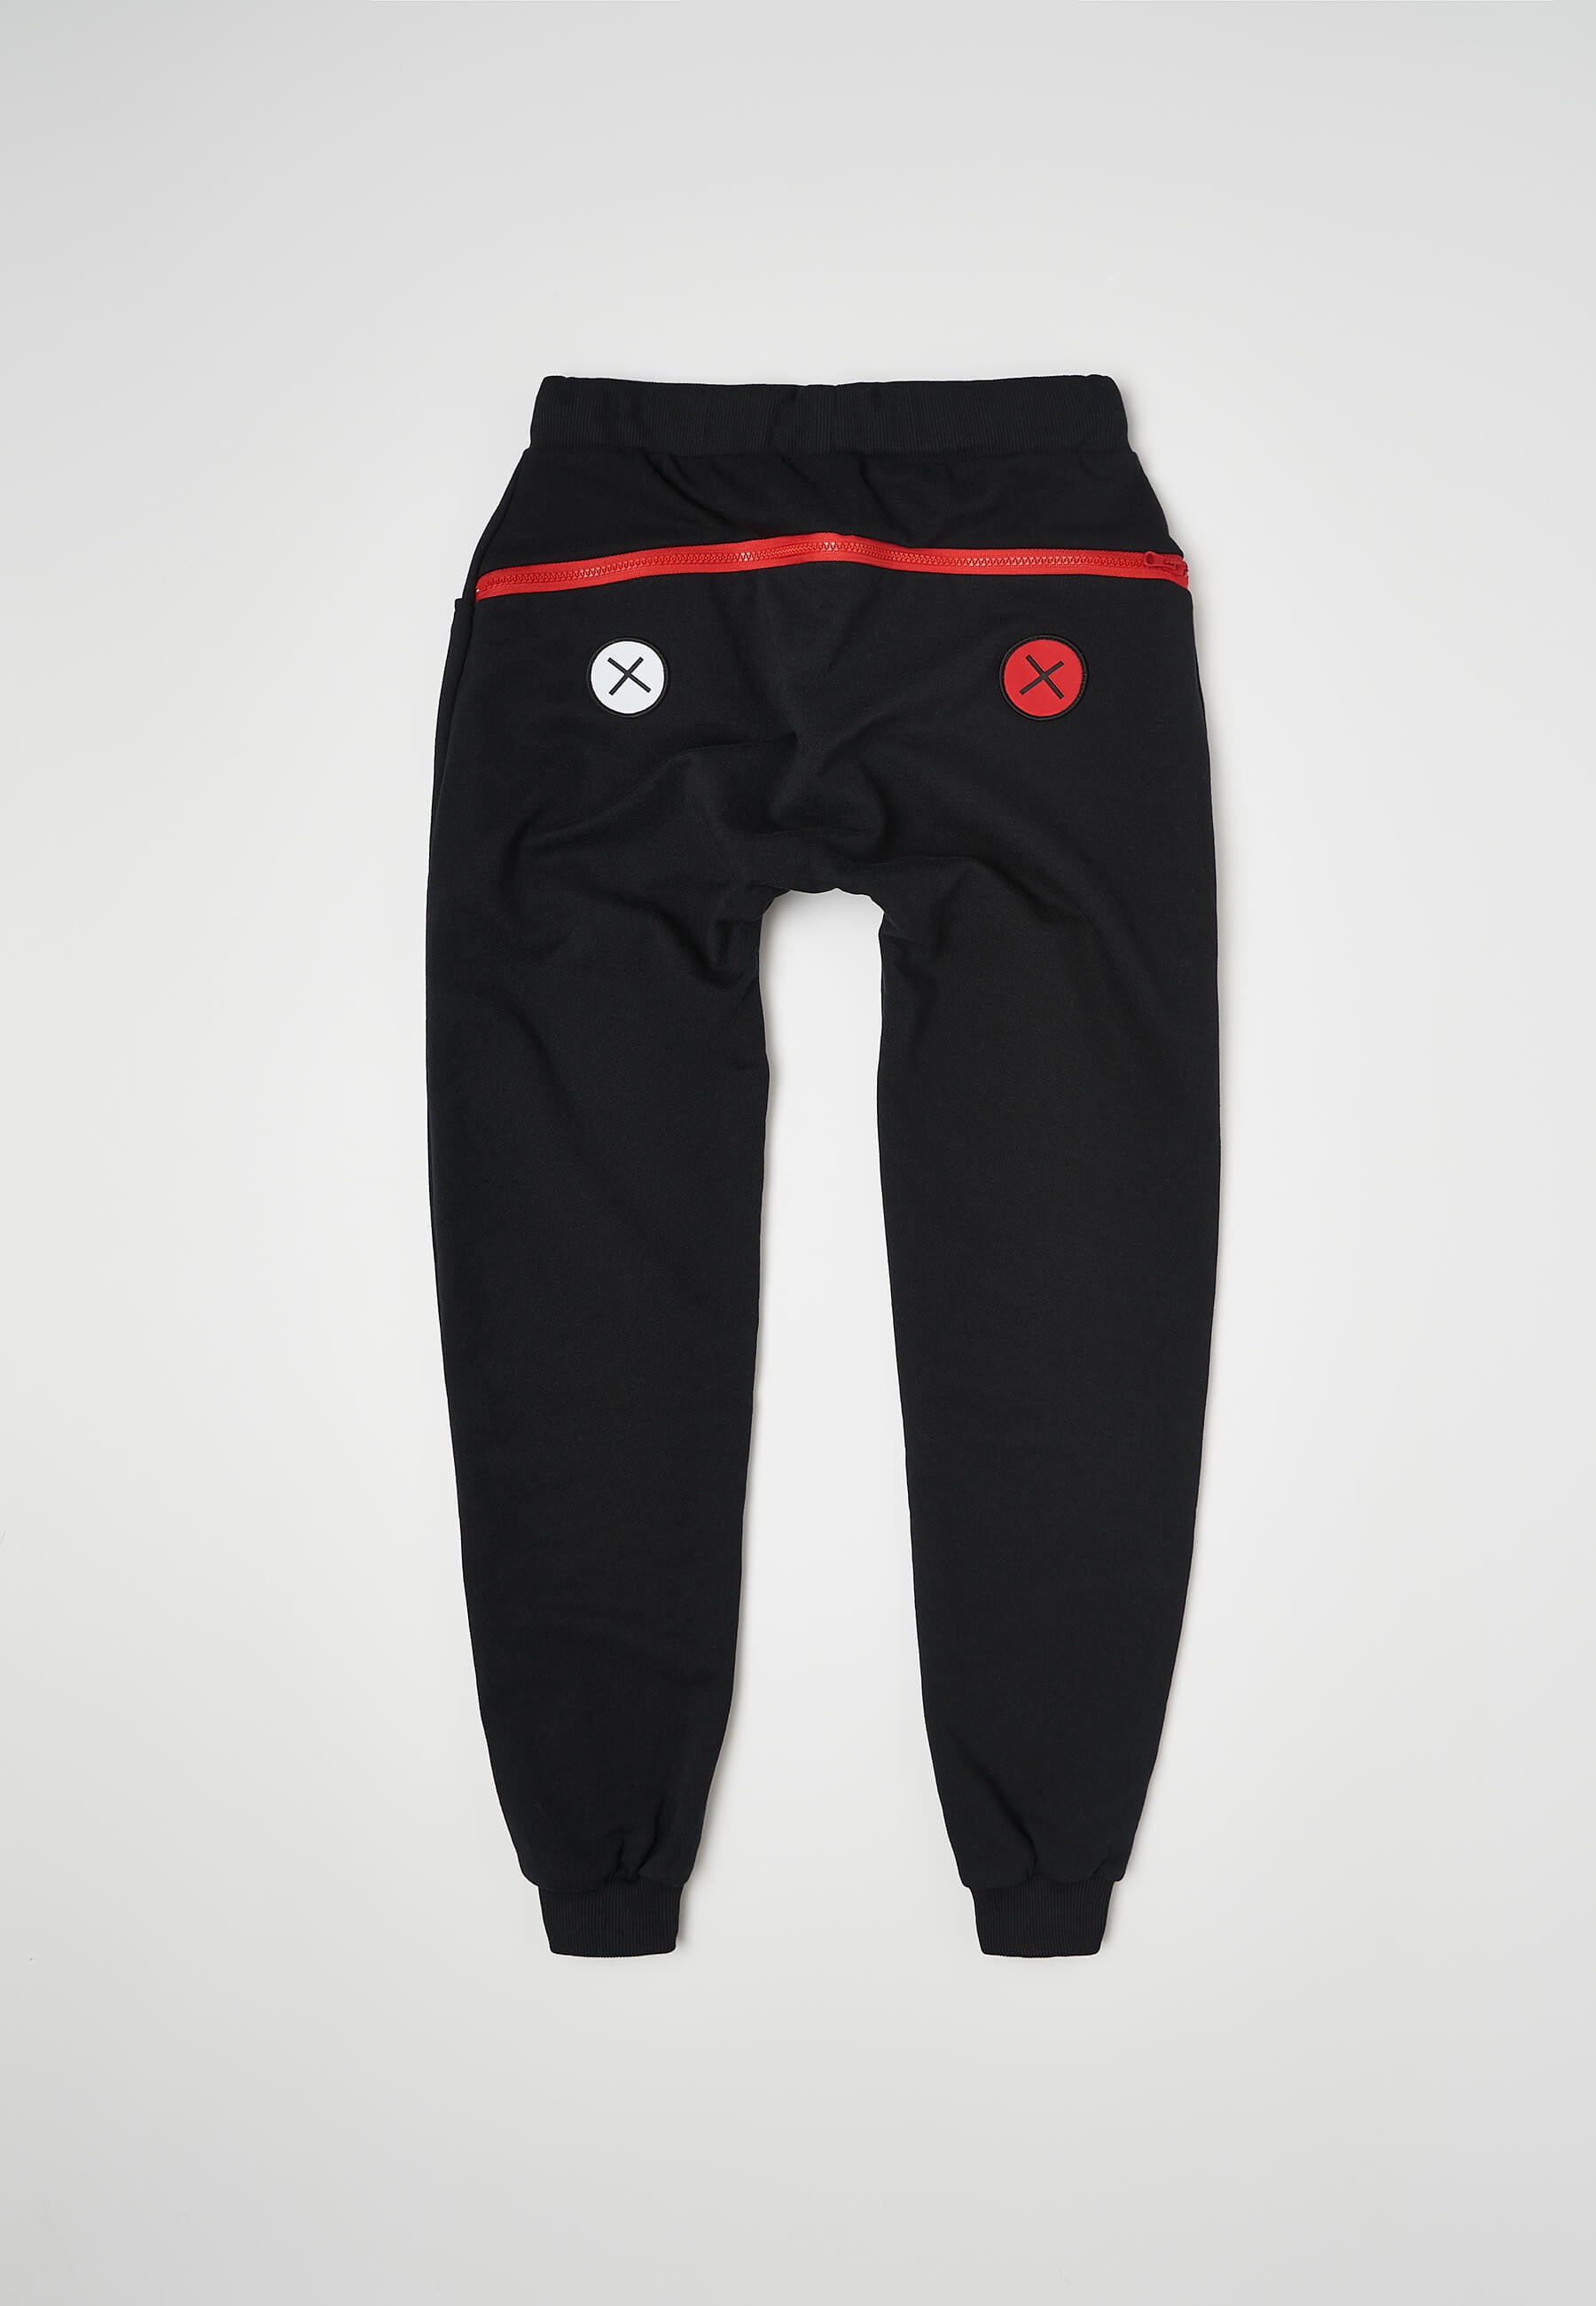 Męskie długie spodnie sportowe na zimę CEP Cold Weather czarne